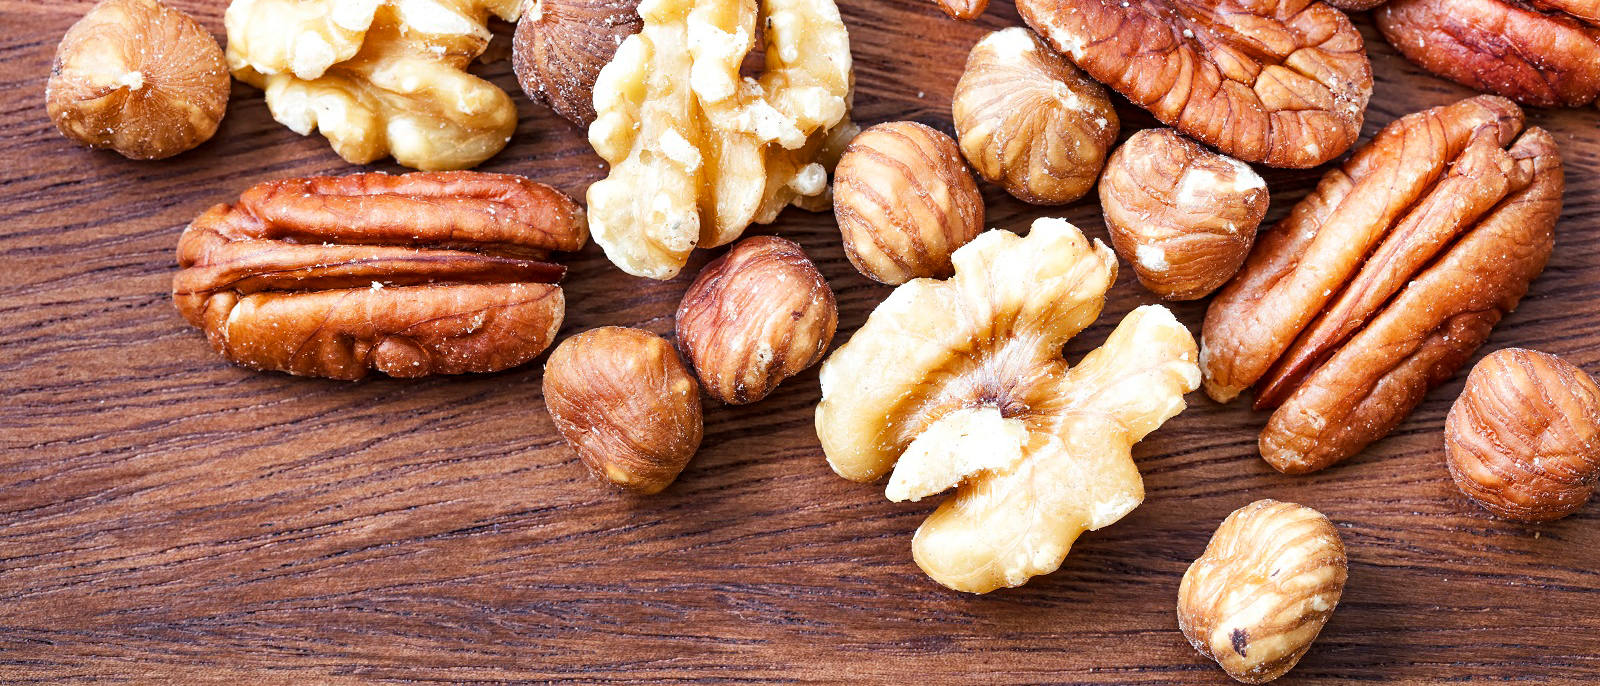 Nüsse enthalten gesunde Fettsäuren und Vitamine